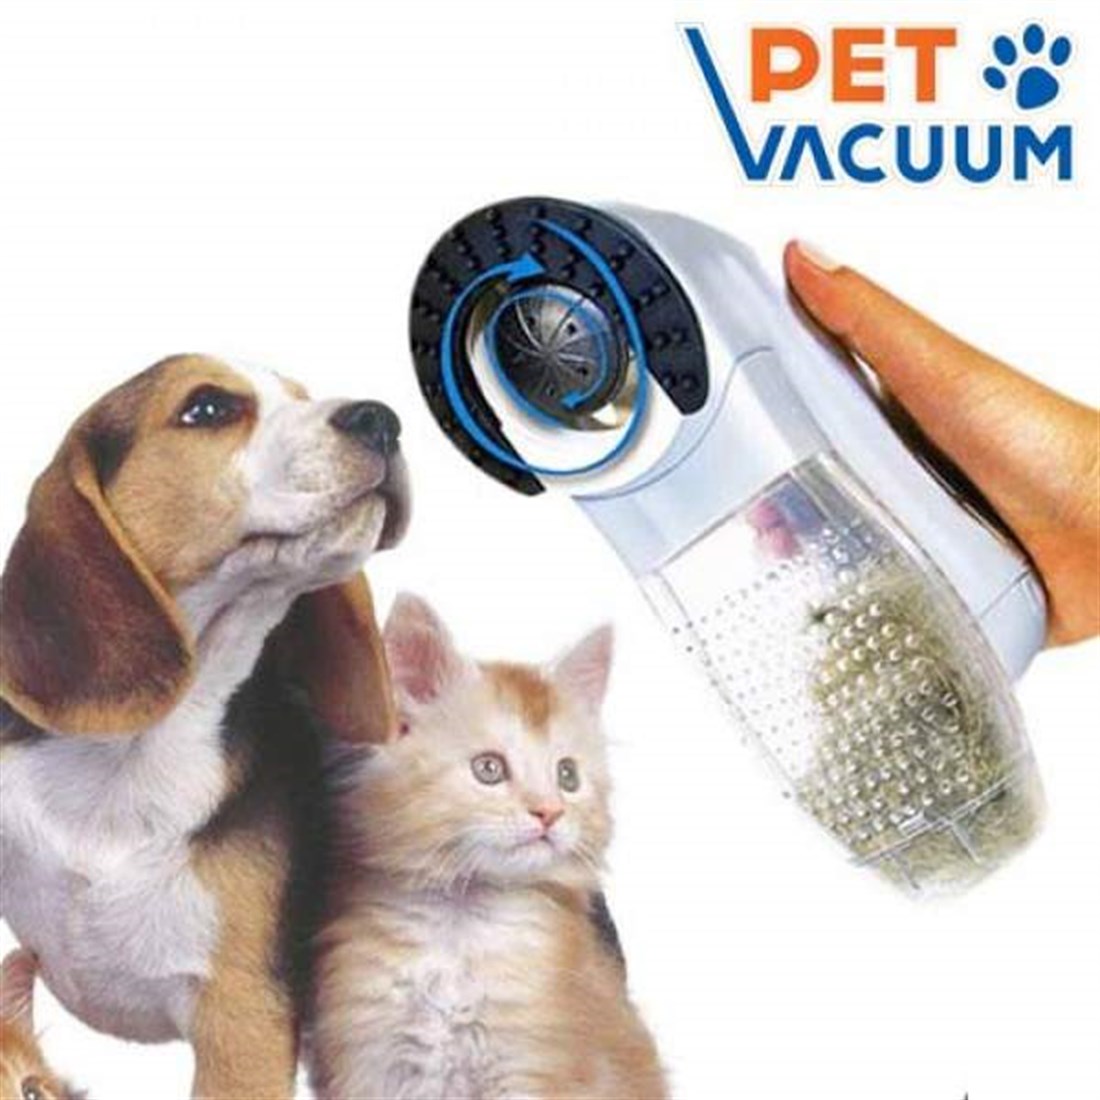 Pet Vacuum Pilli Kedi Köpek Tüy Toplama Süpürgesi - Evcilbesinleri.com